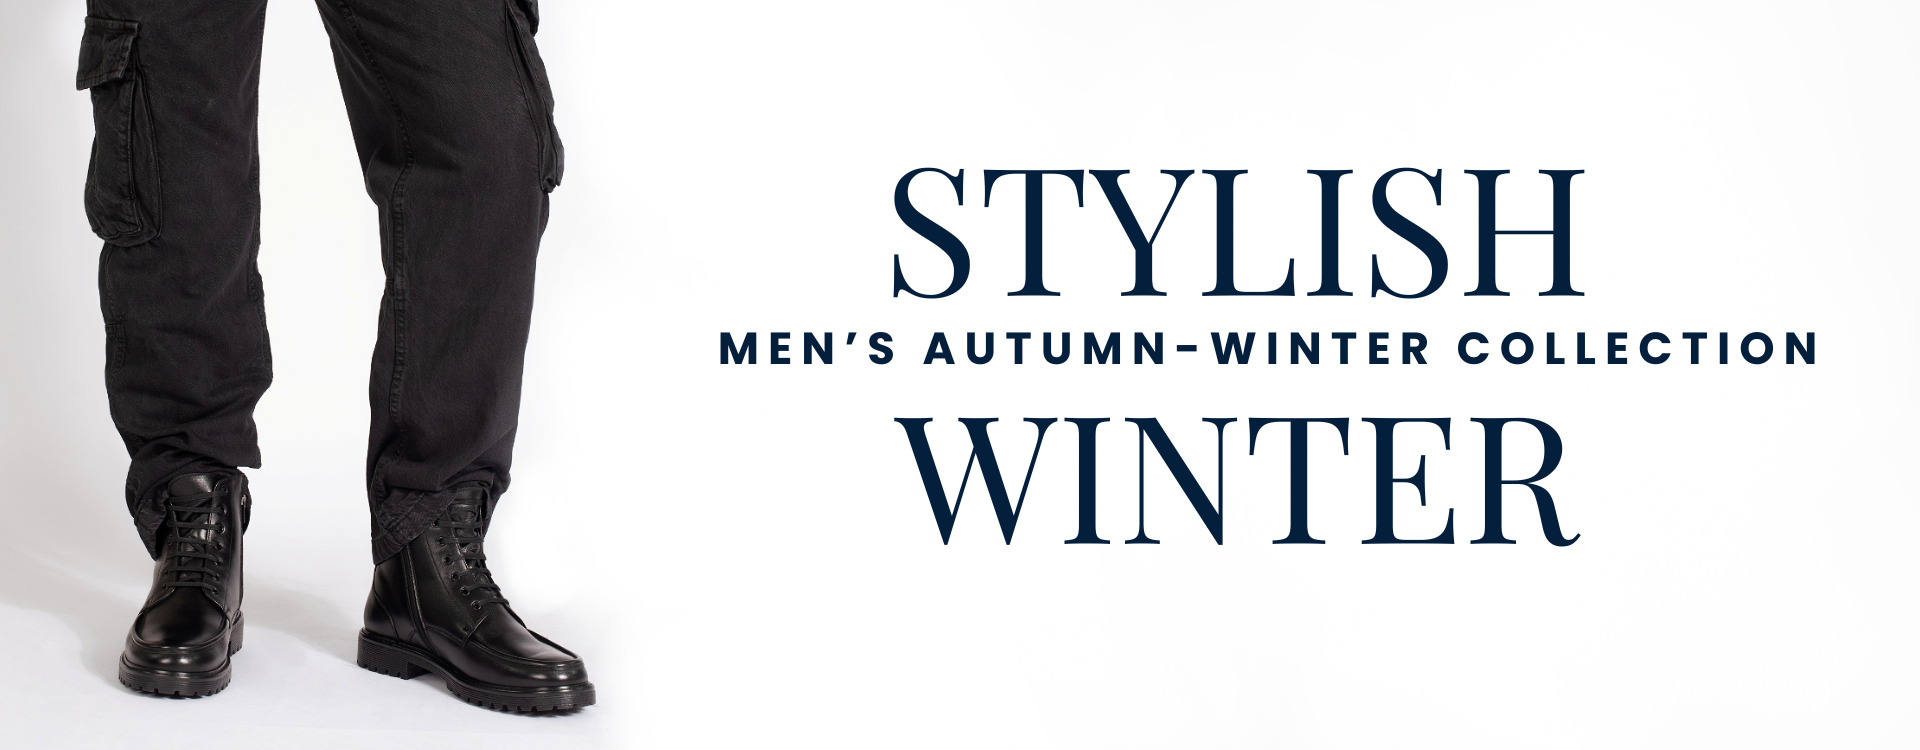 Stylish winter - men’s autumn-winter collection